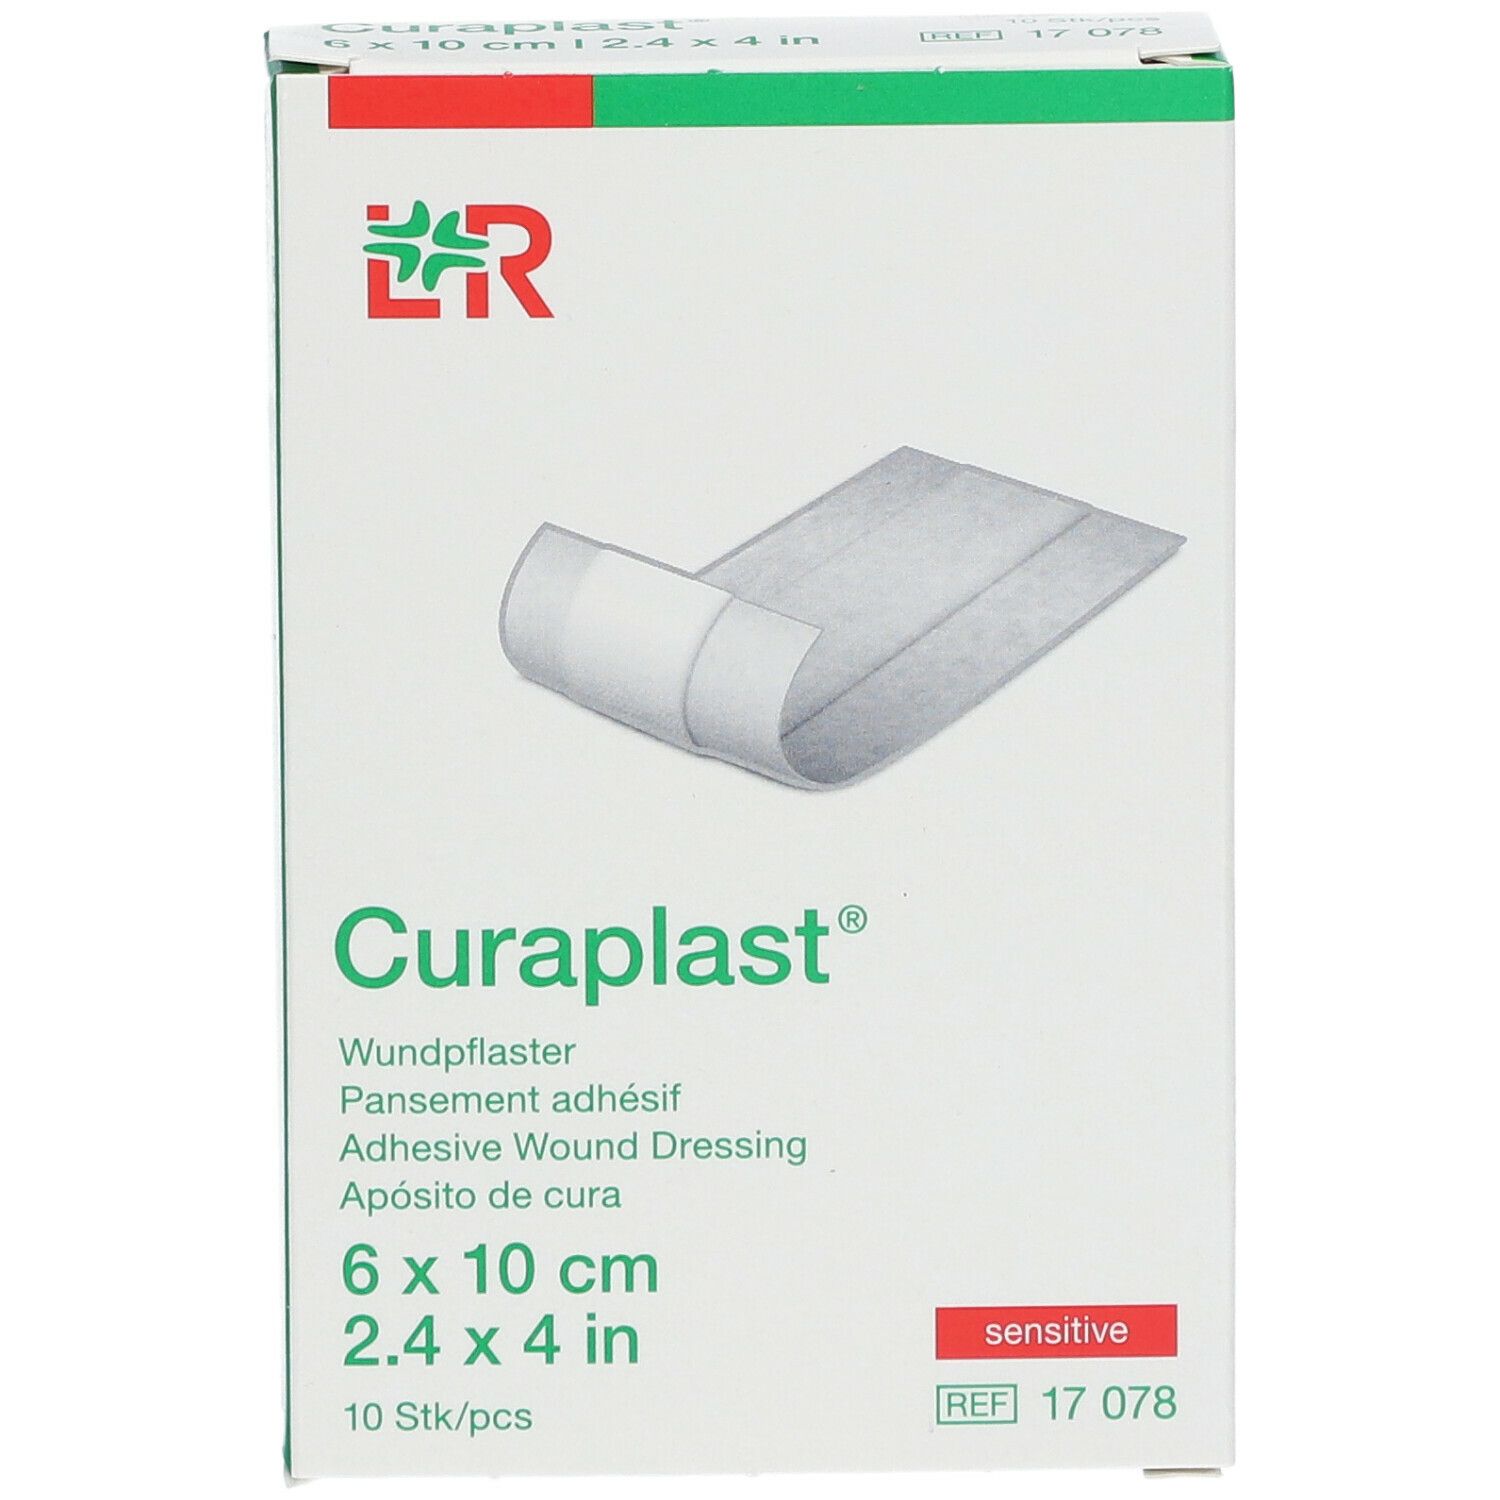 Curaplast® sensitiv Wundschnellverband 6 cm x 10 cm